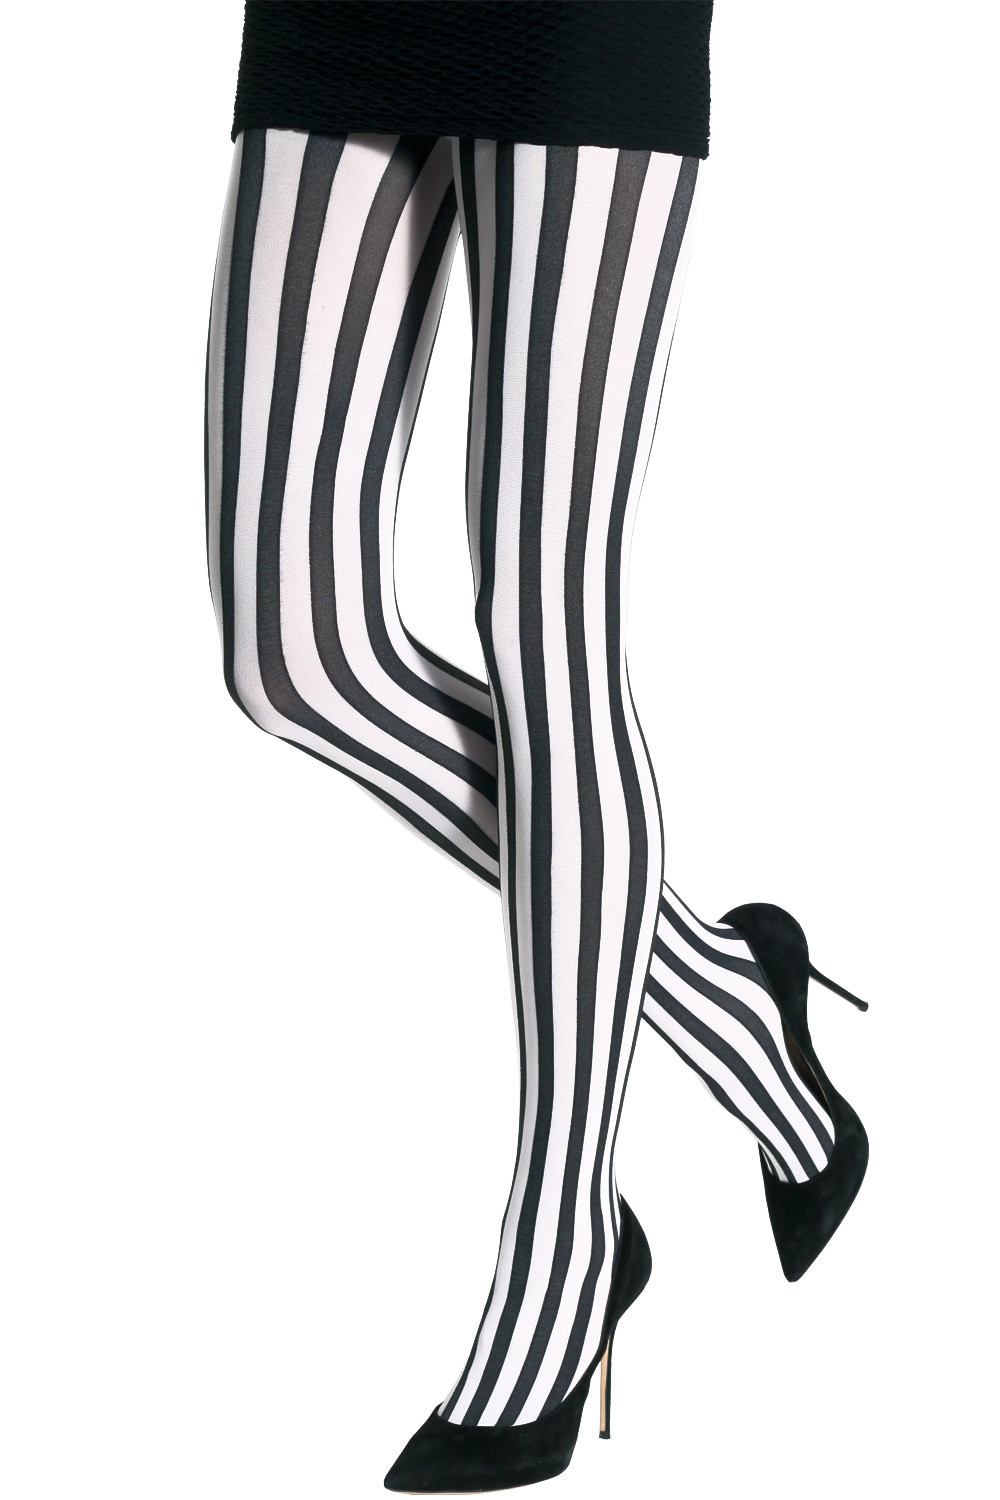  Vertical Striped Leggings for Women Black and White 7